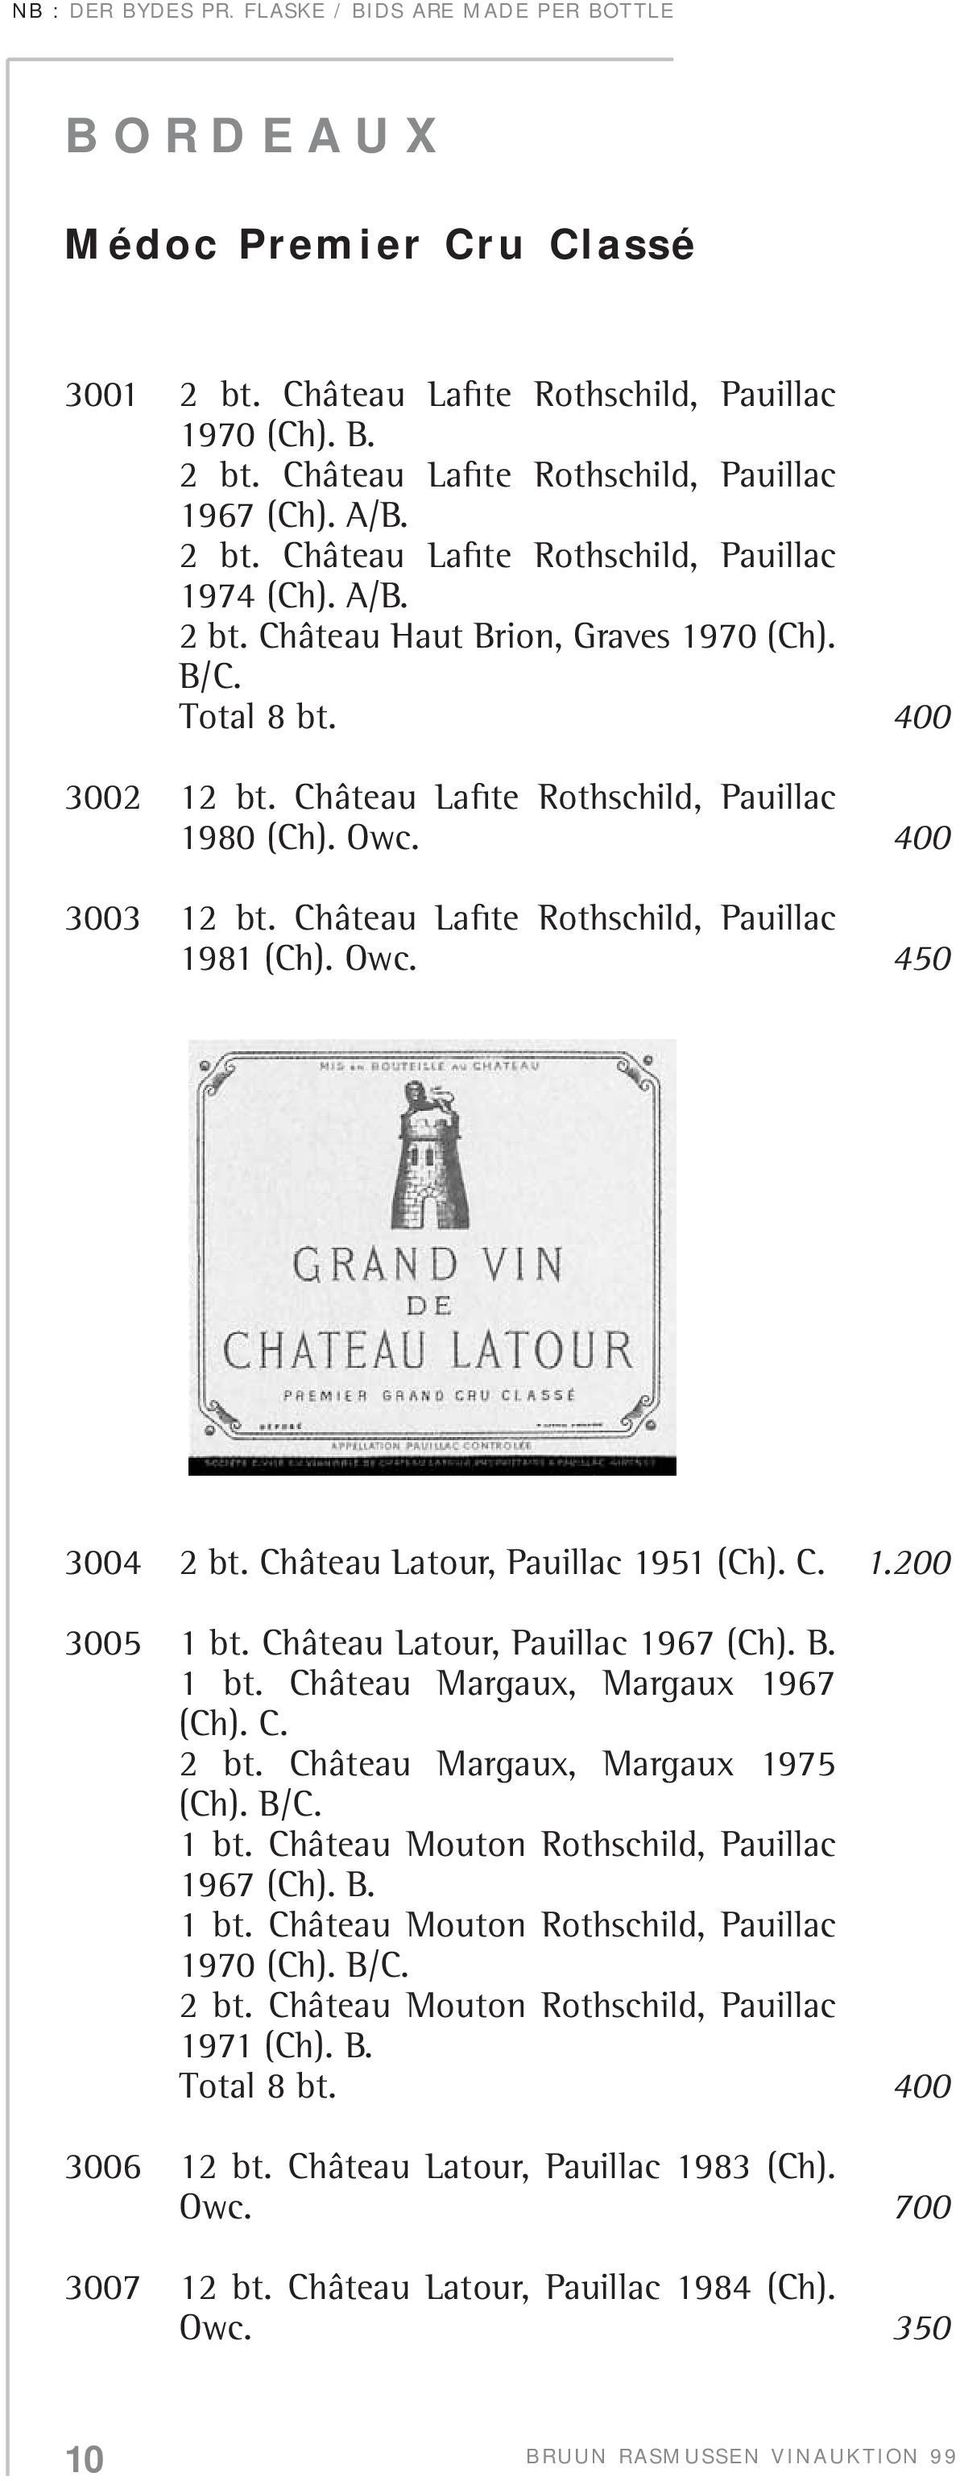 Owc. 450 3004 2 bt. Château Latour, Pauillac 1951 (Ch). C. 1.200 3005 1 bt. Château Latour, Pauillac 1967 (Ch). B. 1 bt. Château Margaux, Margaux 1967 (Ch). C. 2 bt. Château Margaux, Margaux 1975 (Ch).